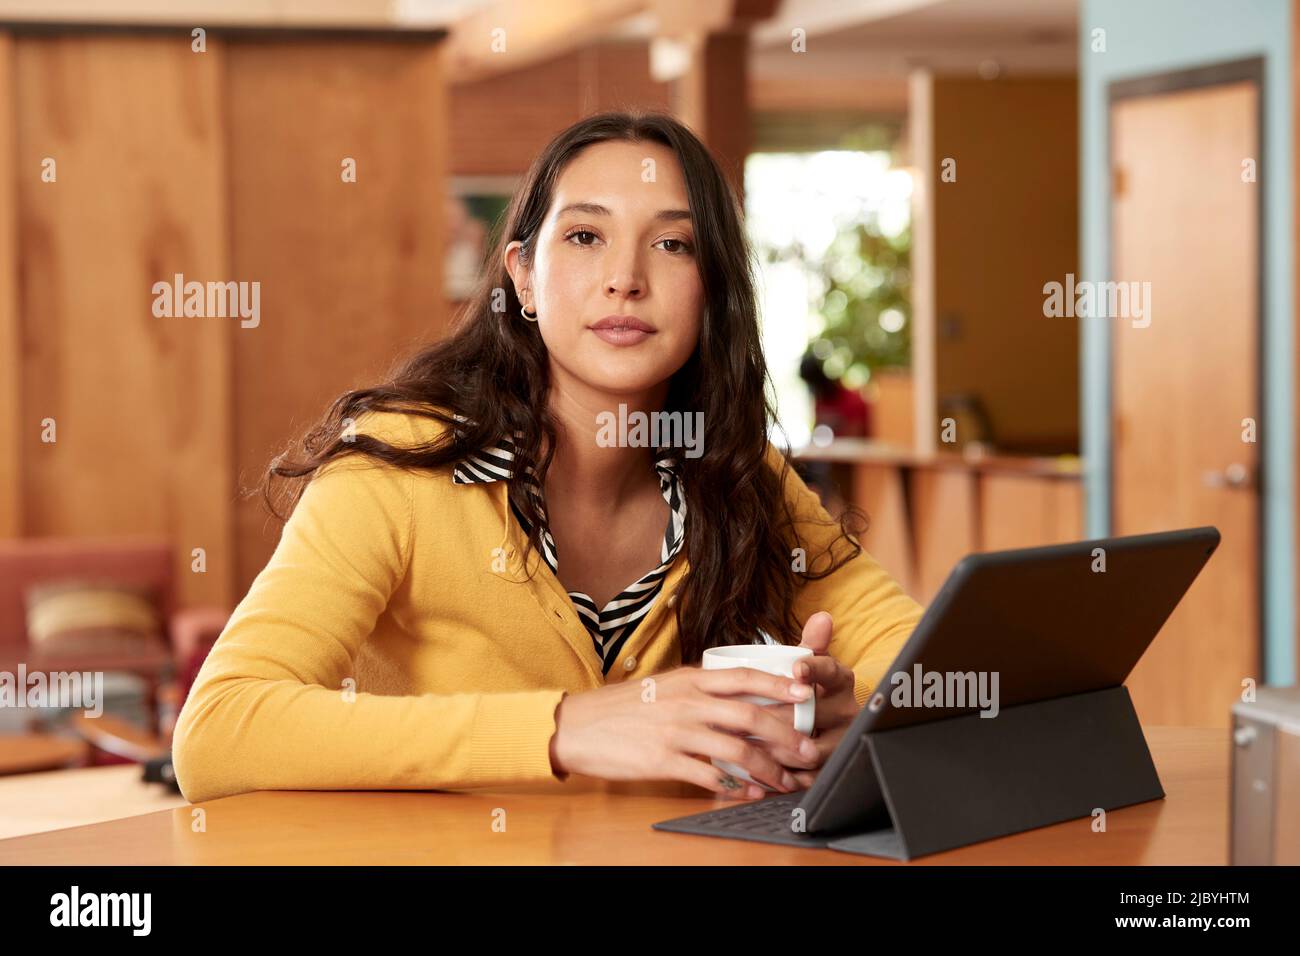 Di giovane etnia donna che indossa maglione giallo con blusa a righe bianche e nere, seduto al bar in cucina del centro loft con iPad e tazza di caffè Foto Stock